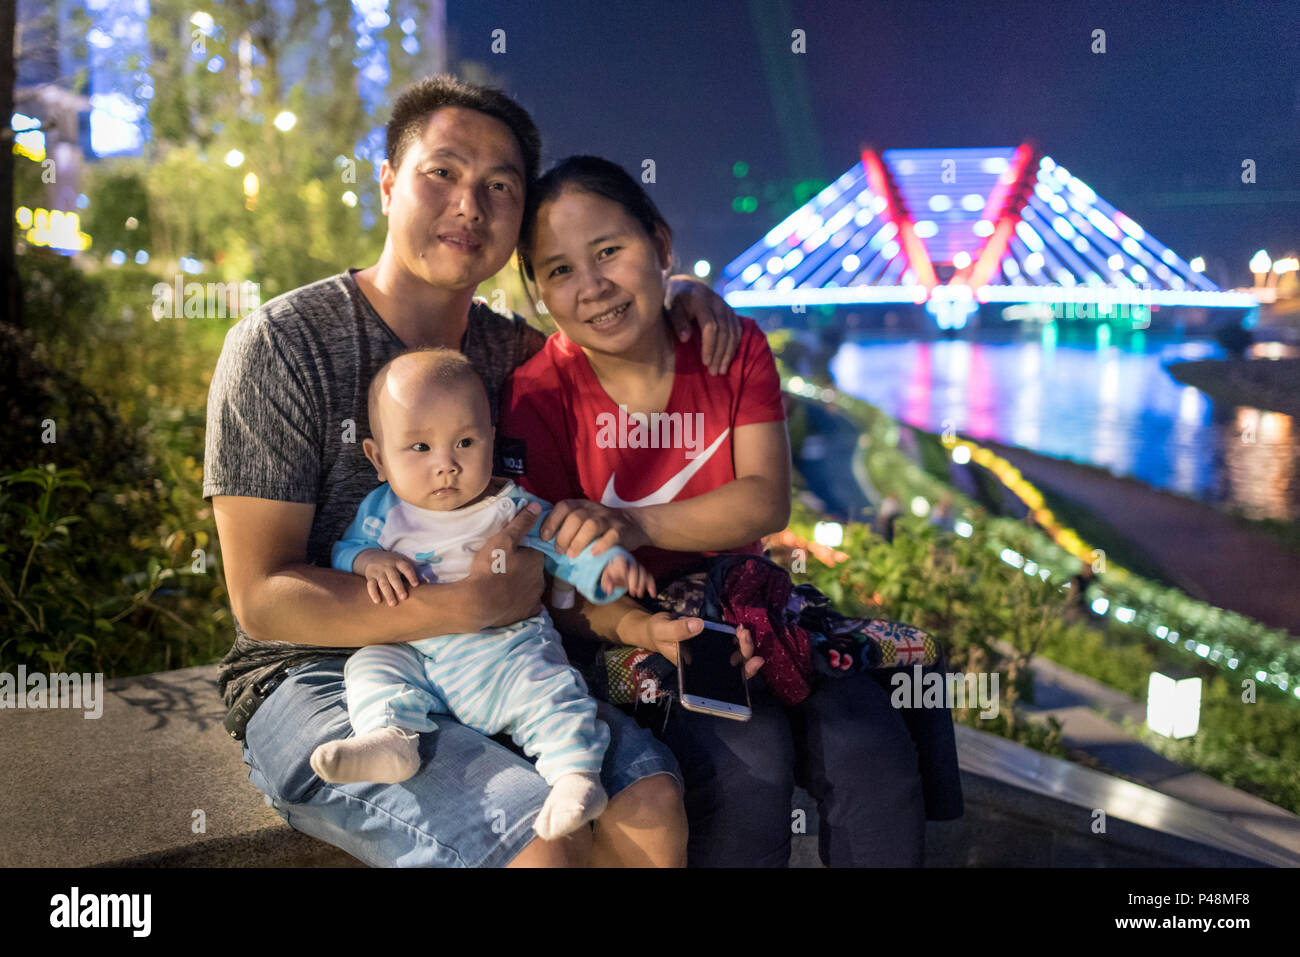 Mutter und Vater mit Baby am Ufer des Flusses und Neon beleuchtete Brücke, nachts das Leben auf der Straße, Libo, Provinz Guizhou, China. Stockfoto